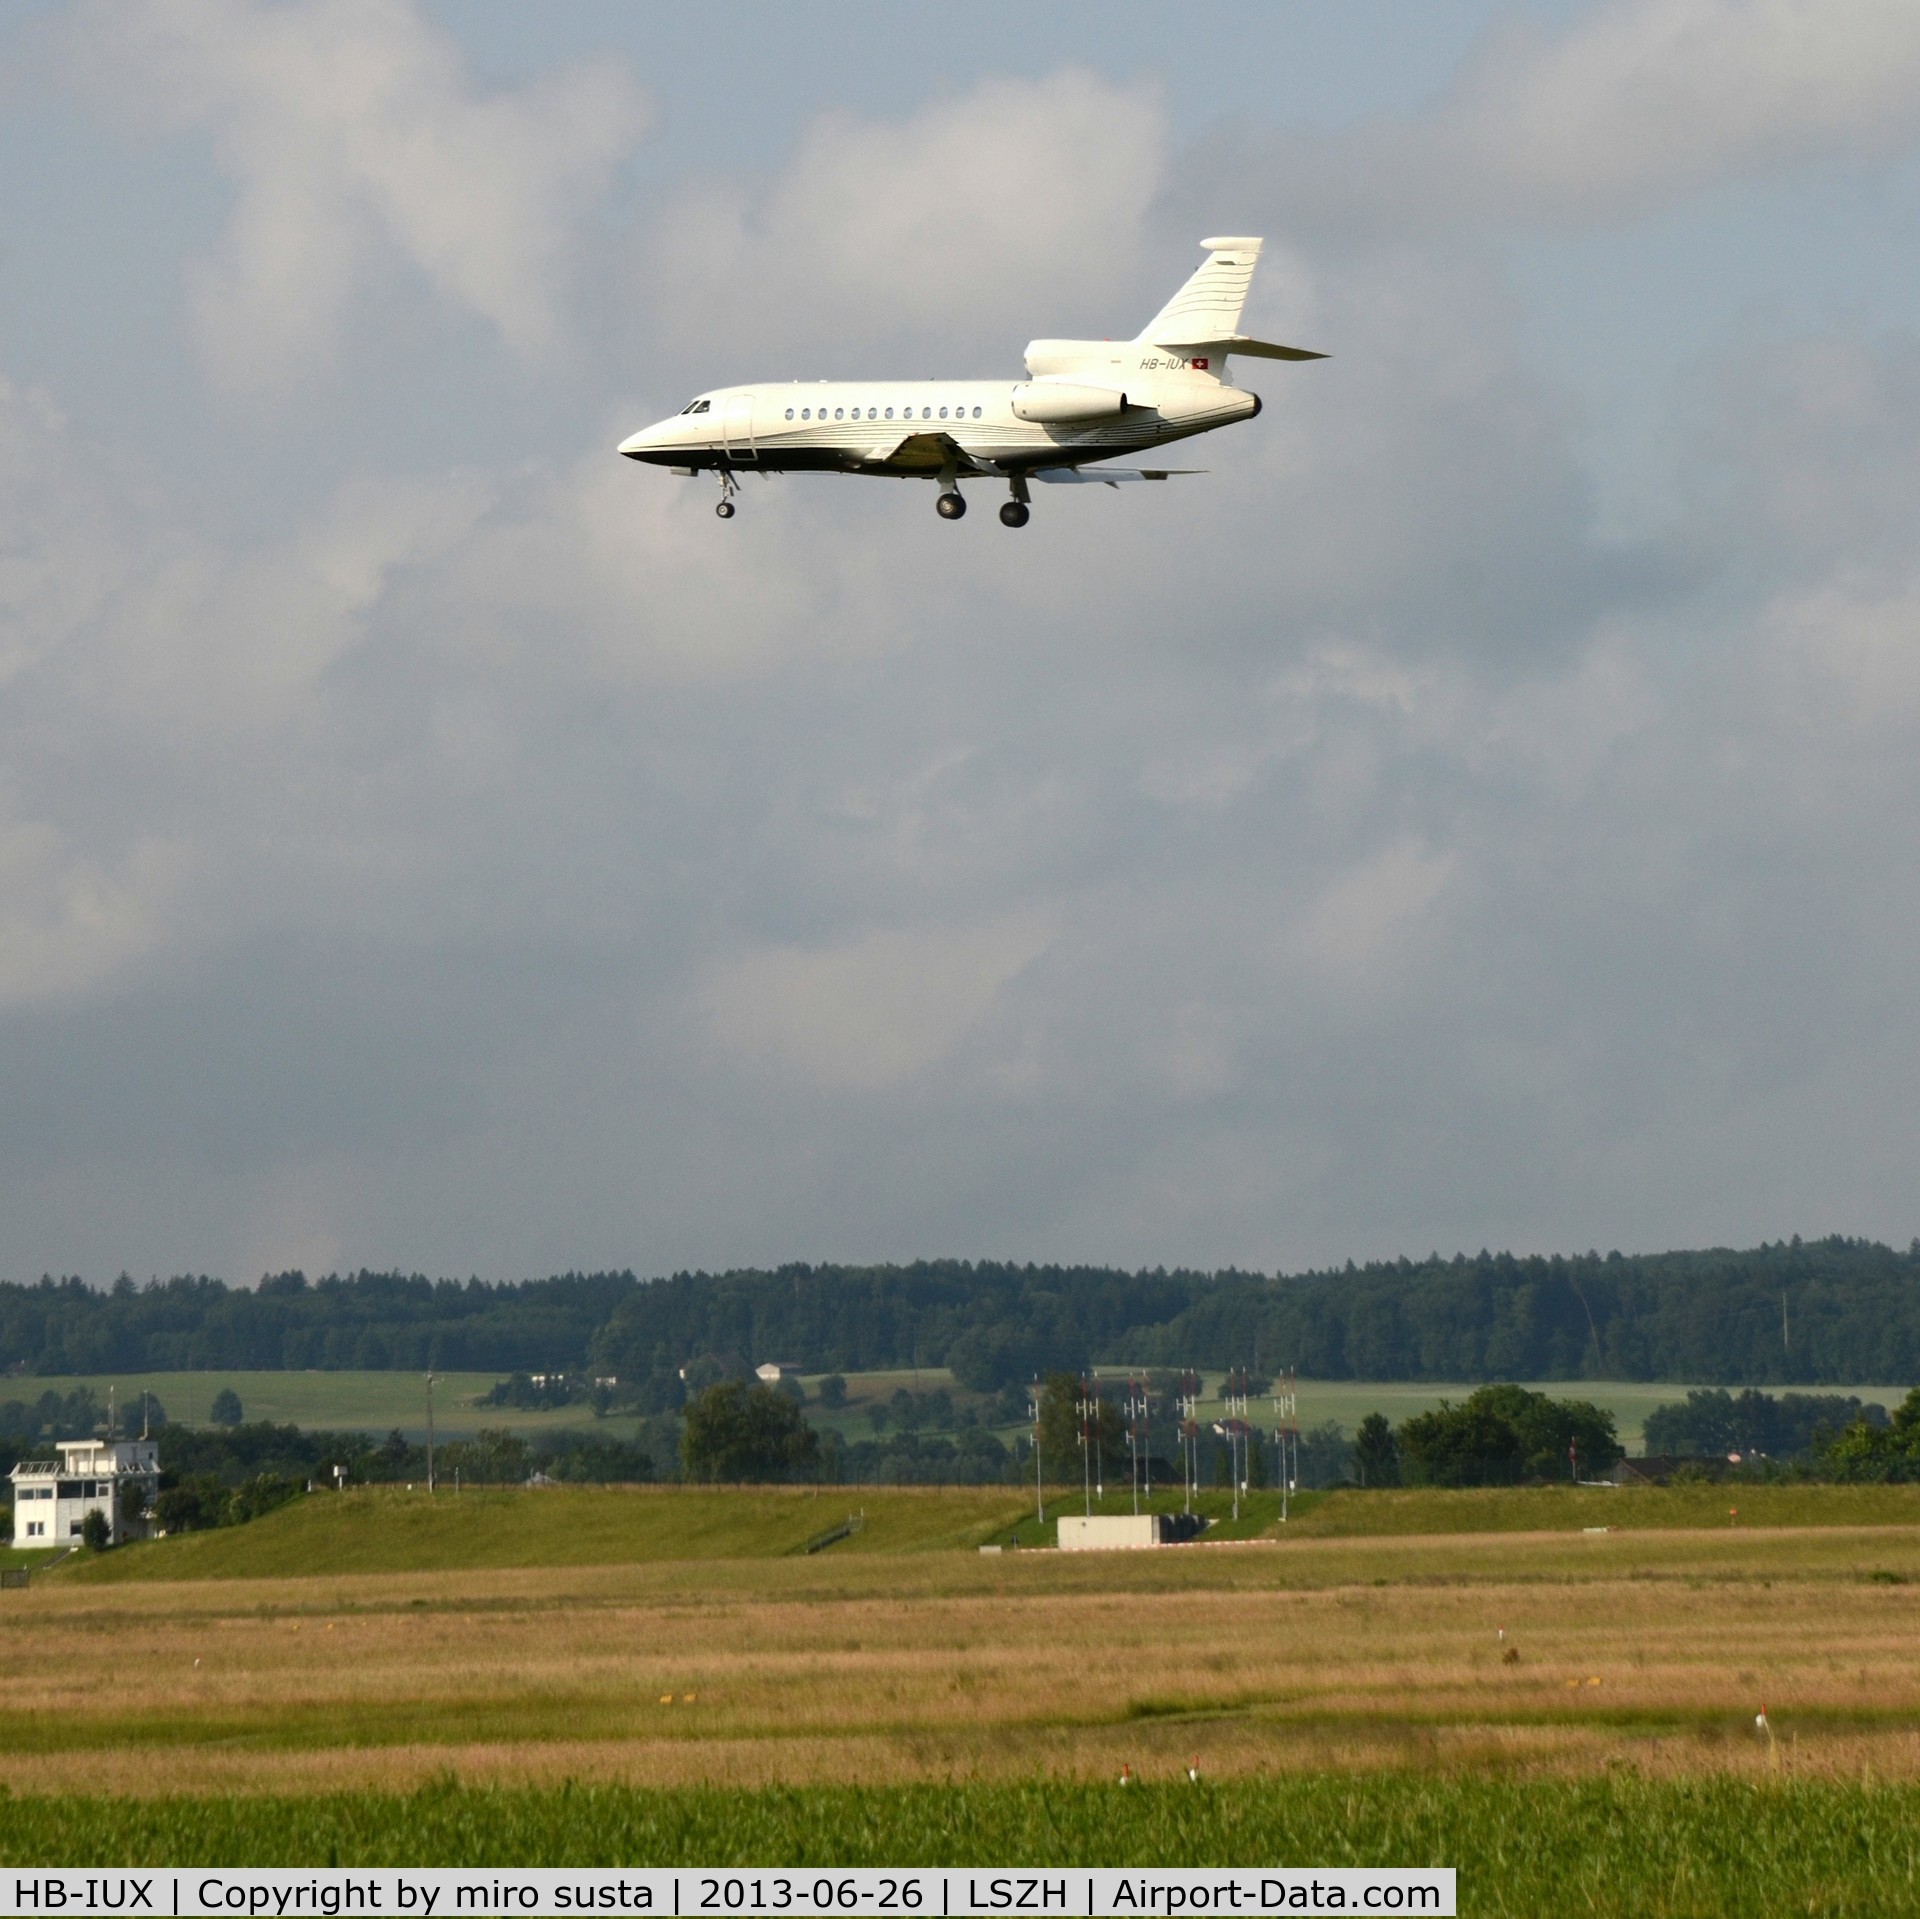 HB-IUX, 1999 Dassault Falcon 900EX C/N 54, TAG Aviation Dassault Falcon 900 landing at Zurich-Kloten International Airport.